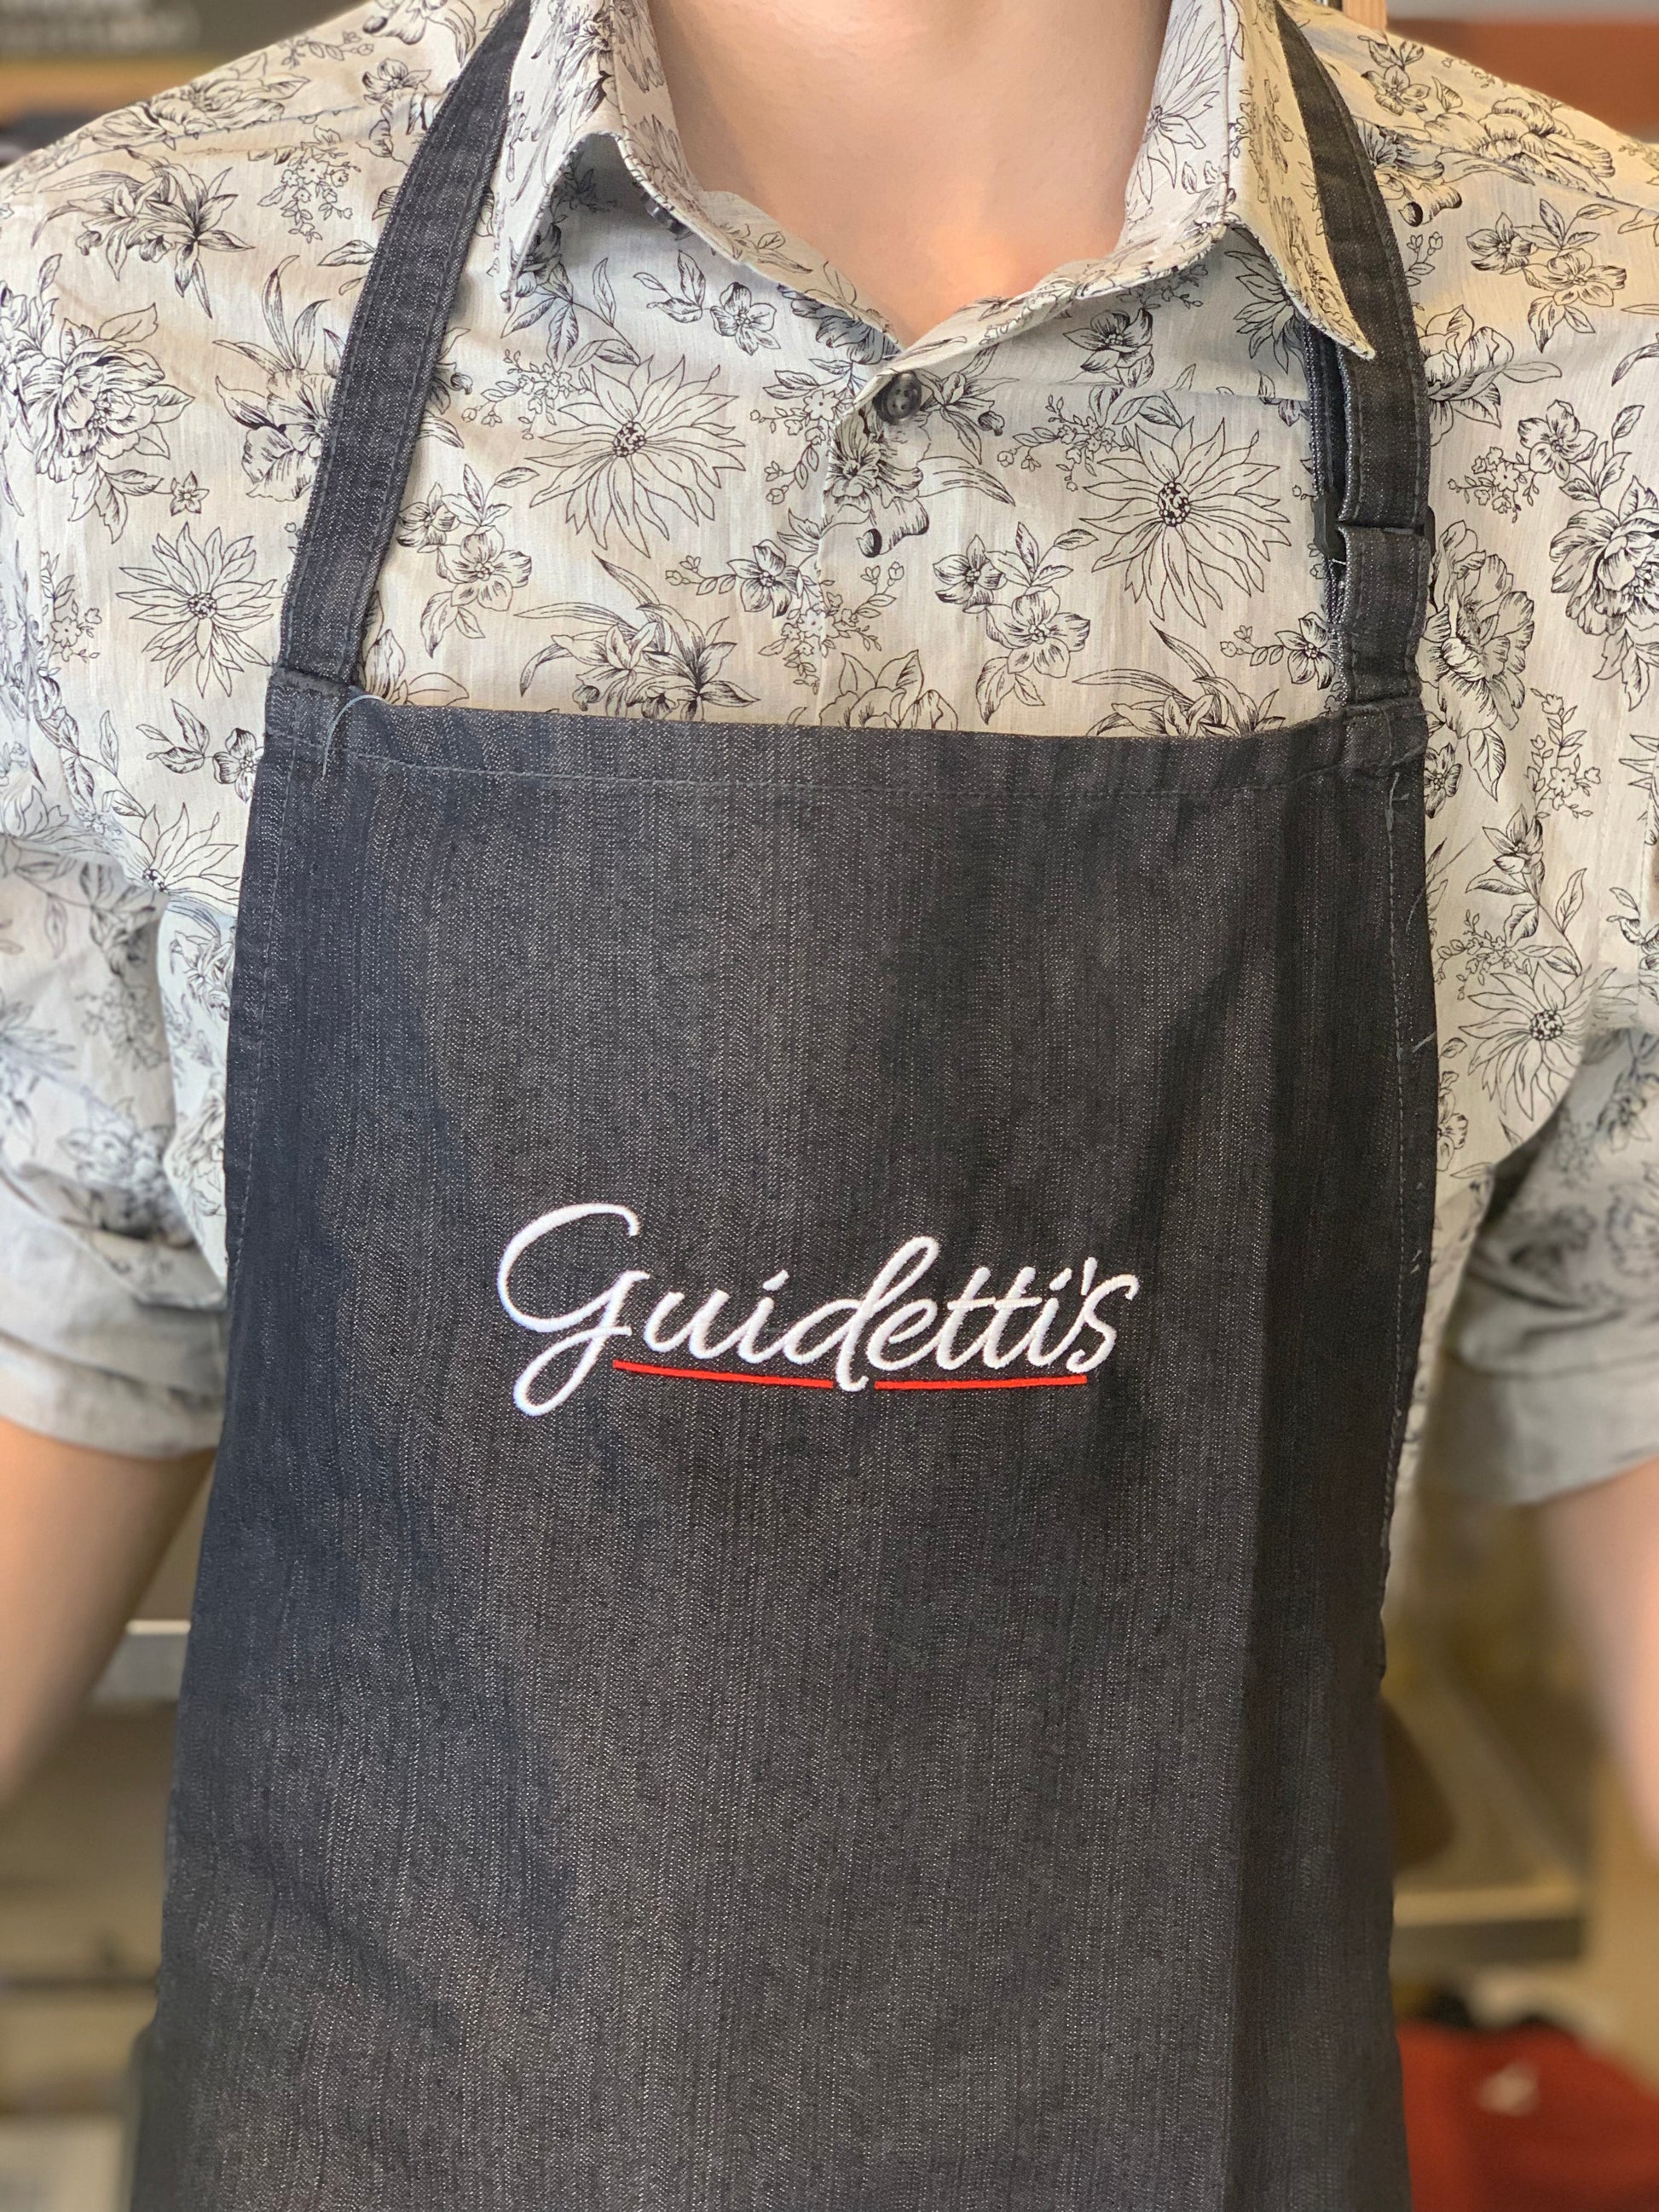 Guidetti's Embroidered Apron